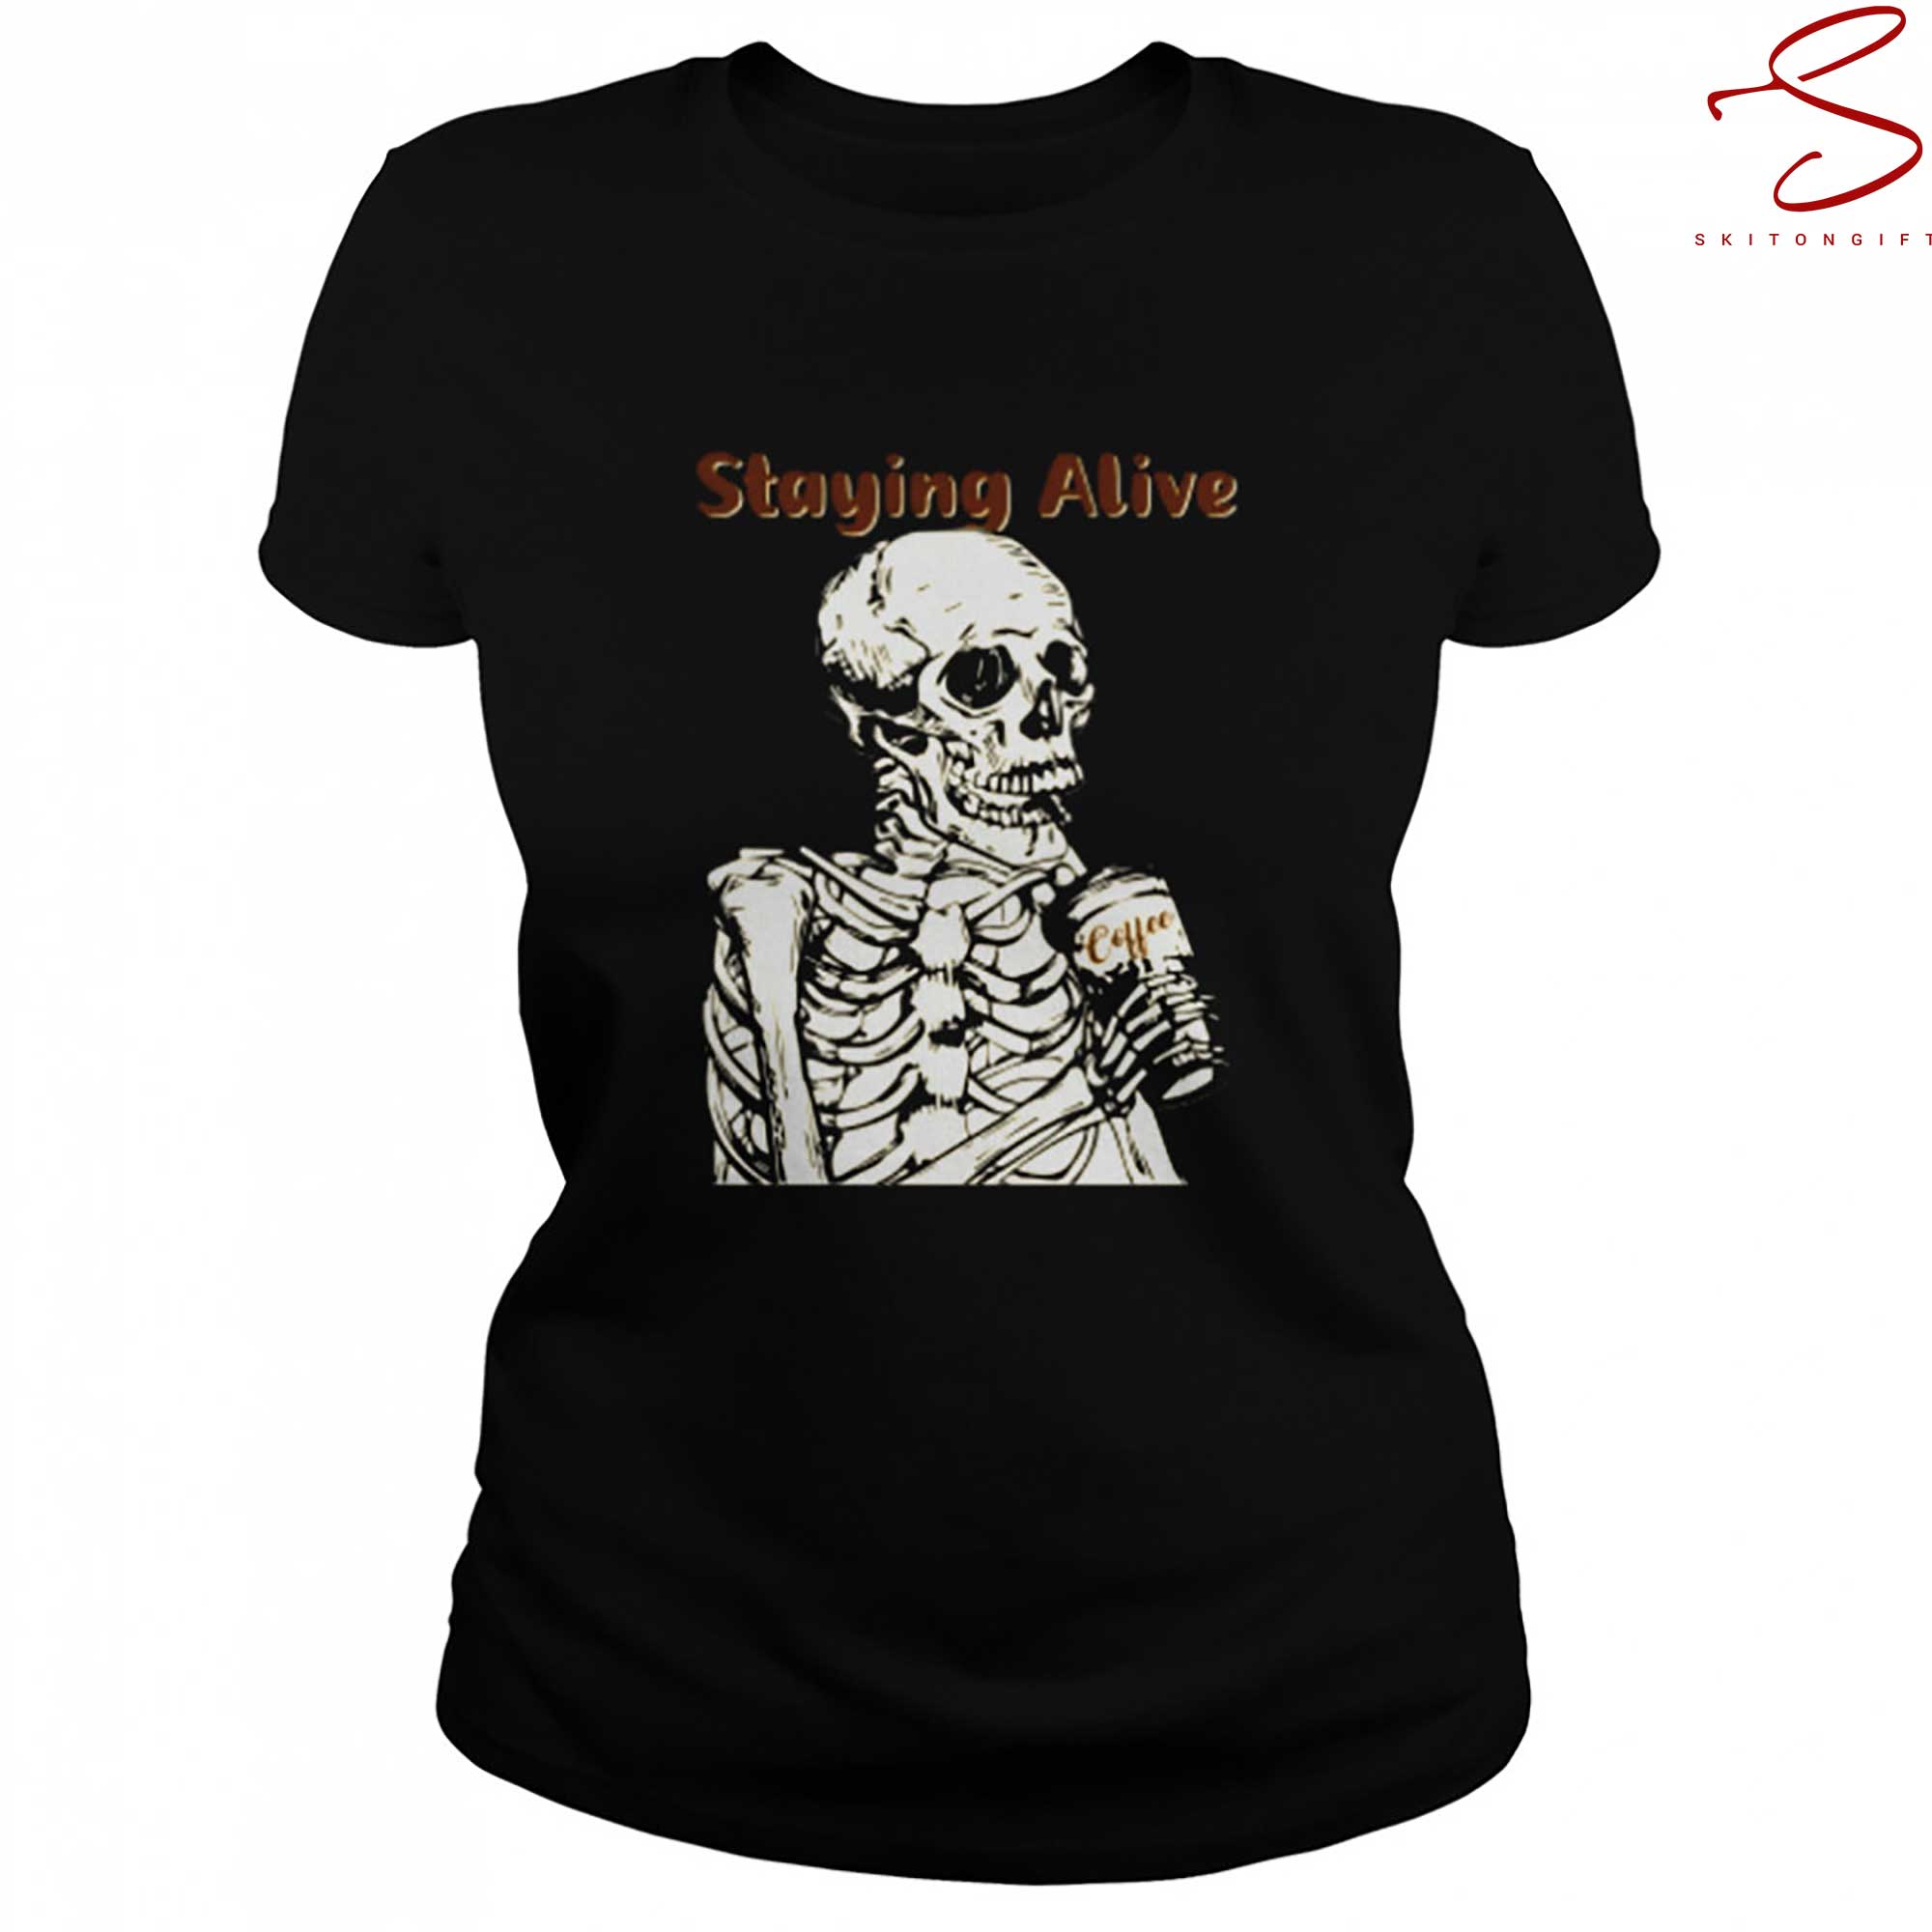 Skitongift Halloween  Staying Alive T Shirt